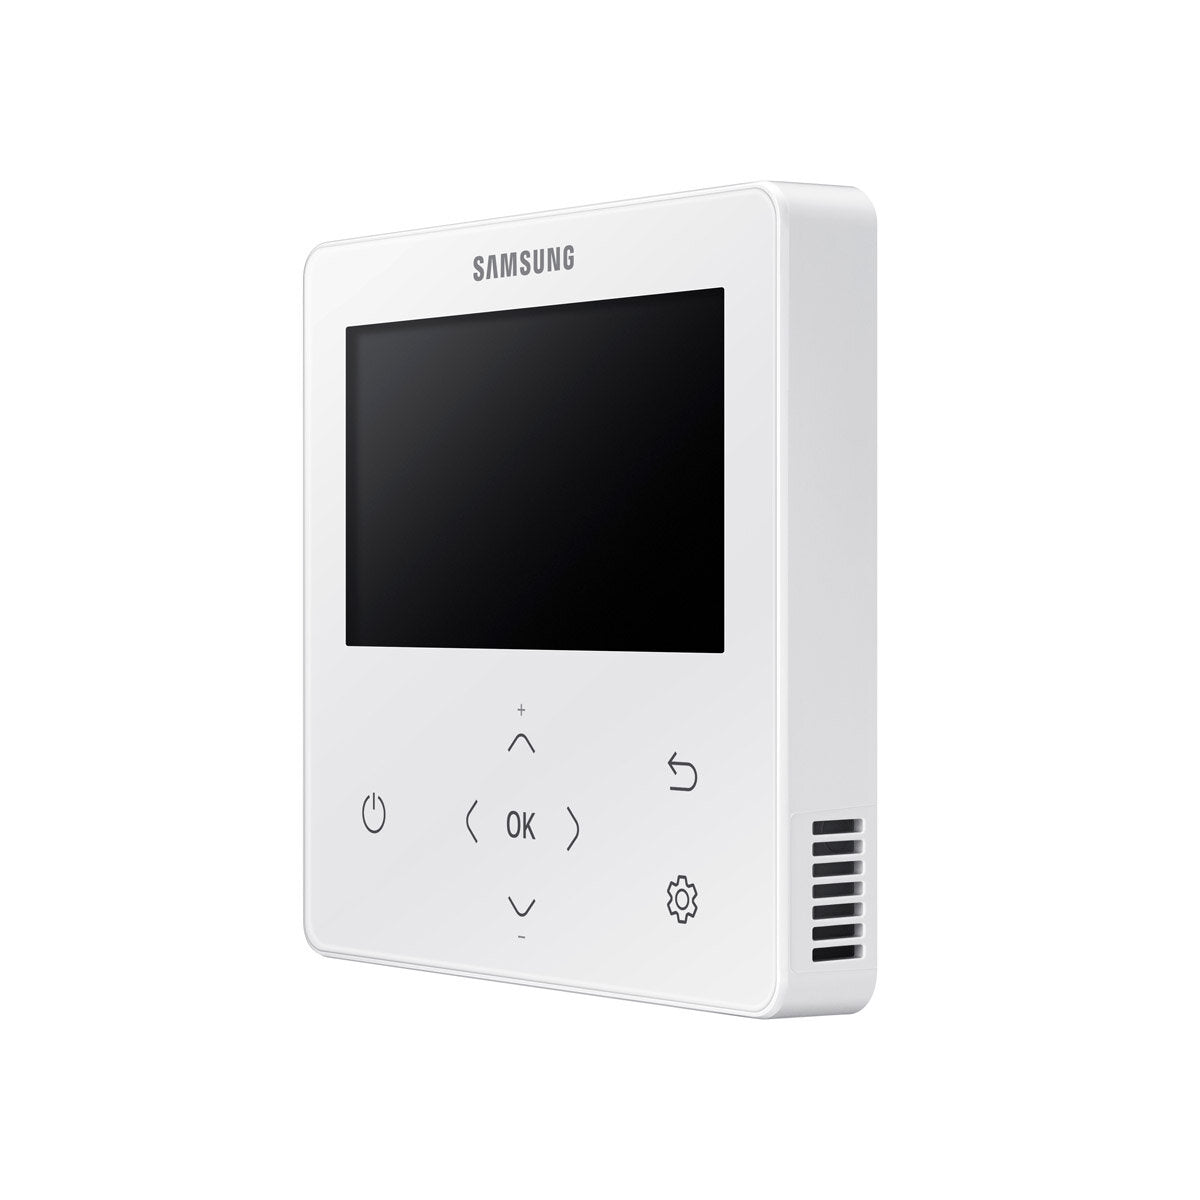 Samsung Klimaanlage Windfree 4-Wege Trial Split 7000 + 9000 + 12000 BTU Inverter A++ Außengerät 6,8 kW